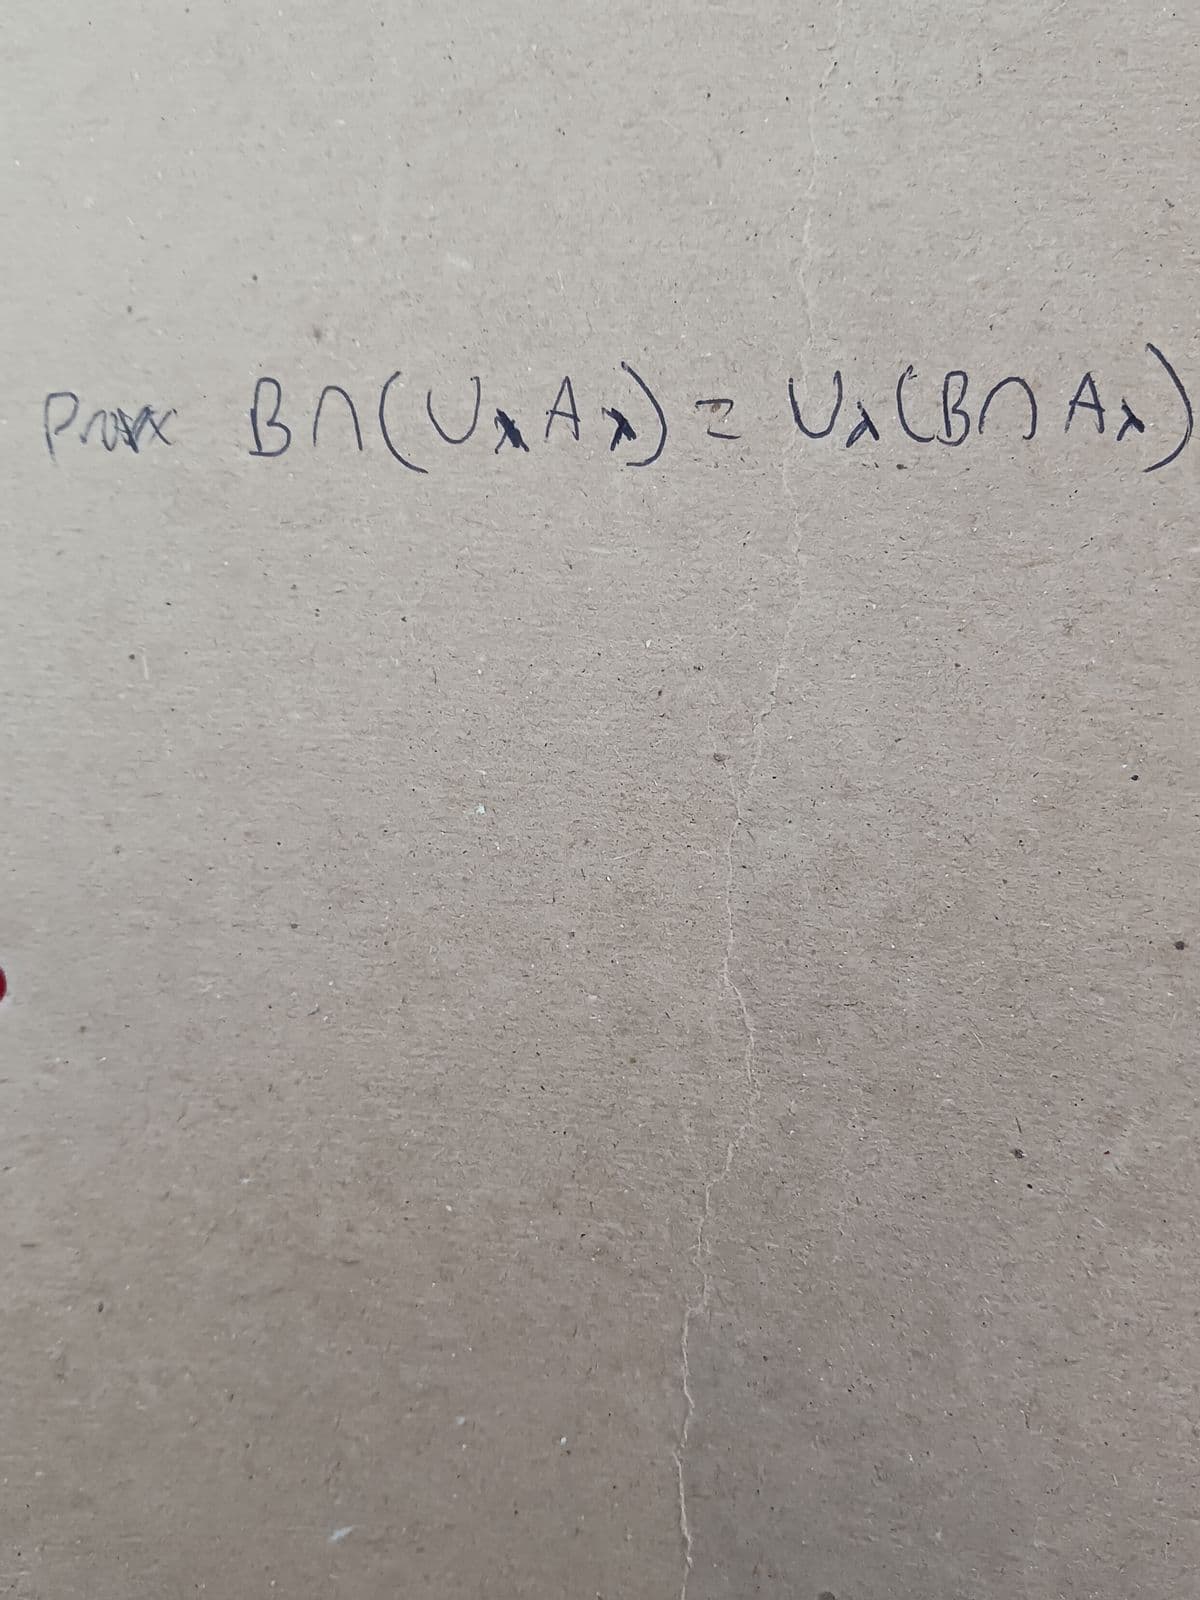 PO BA (UA) = UX (BAX)